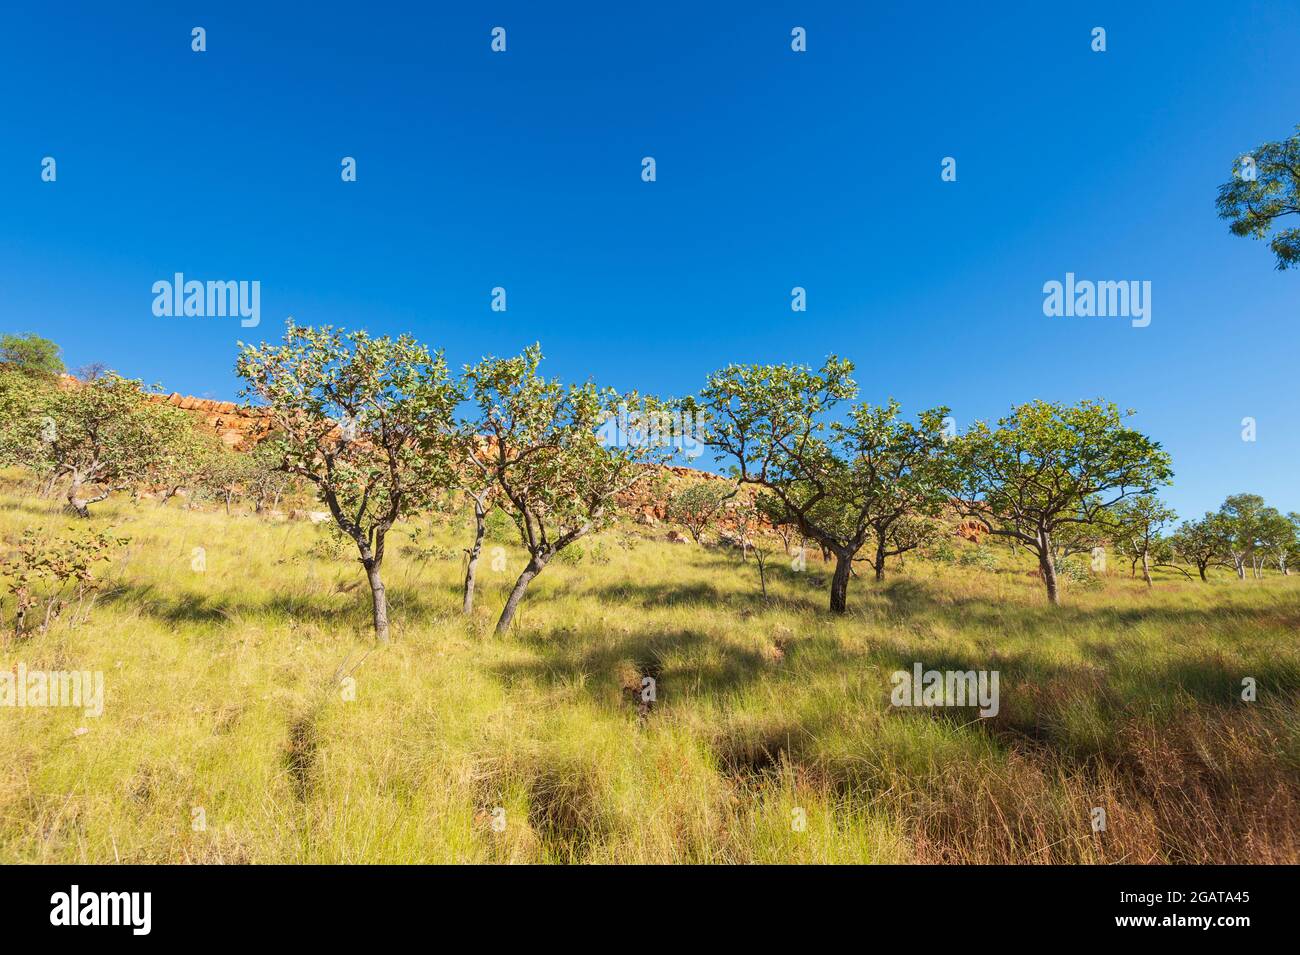 Vue panoramique sur la Savannah au Mornington Wilderness Camp, région de Kimberley, Australie occidentale, Australie occidentale, Australie Banque D'Images